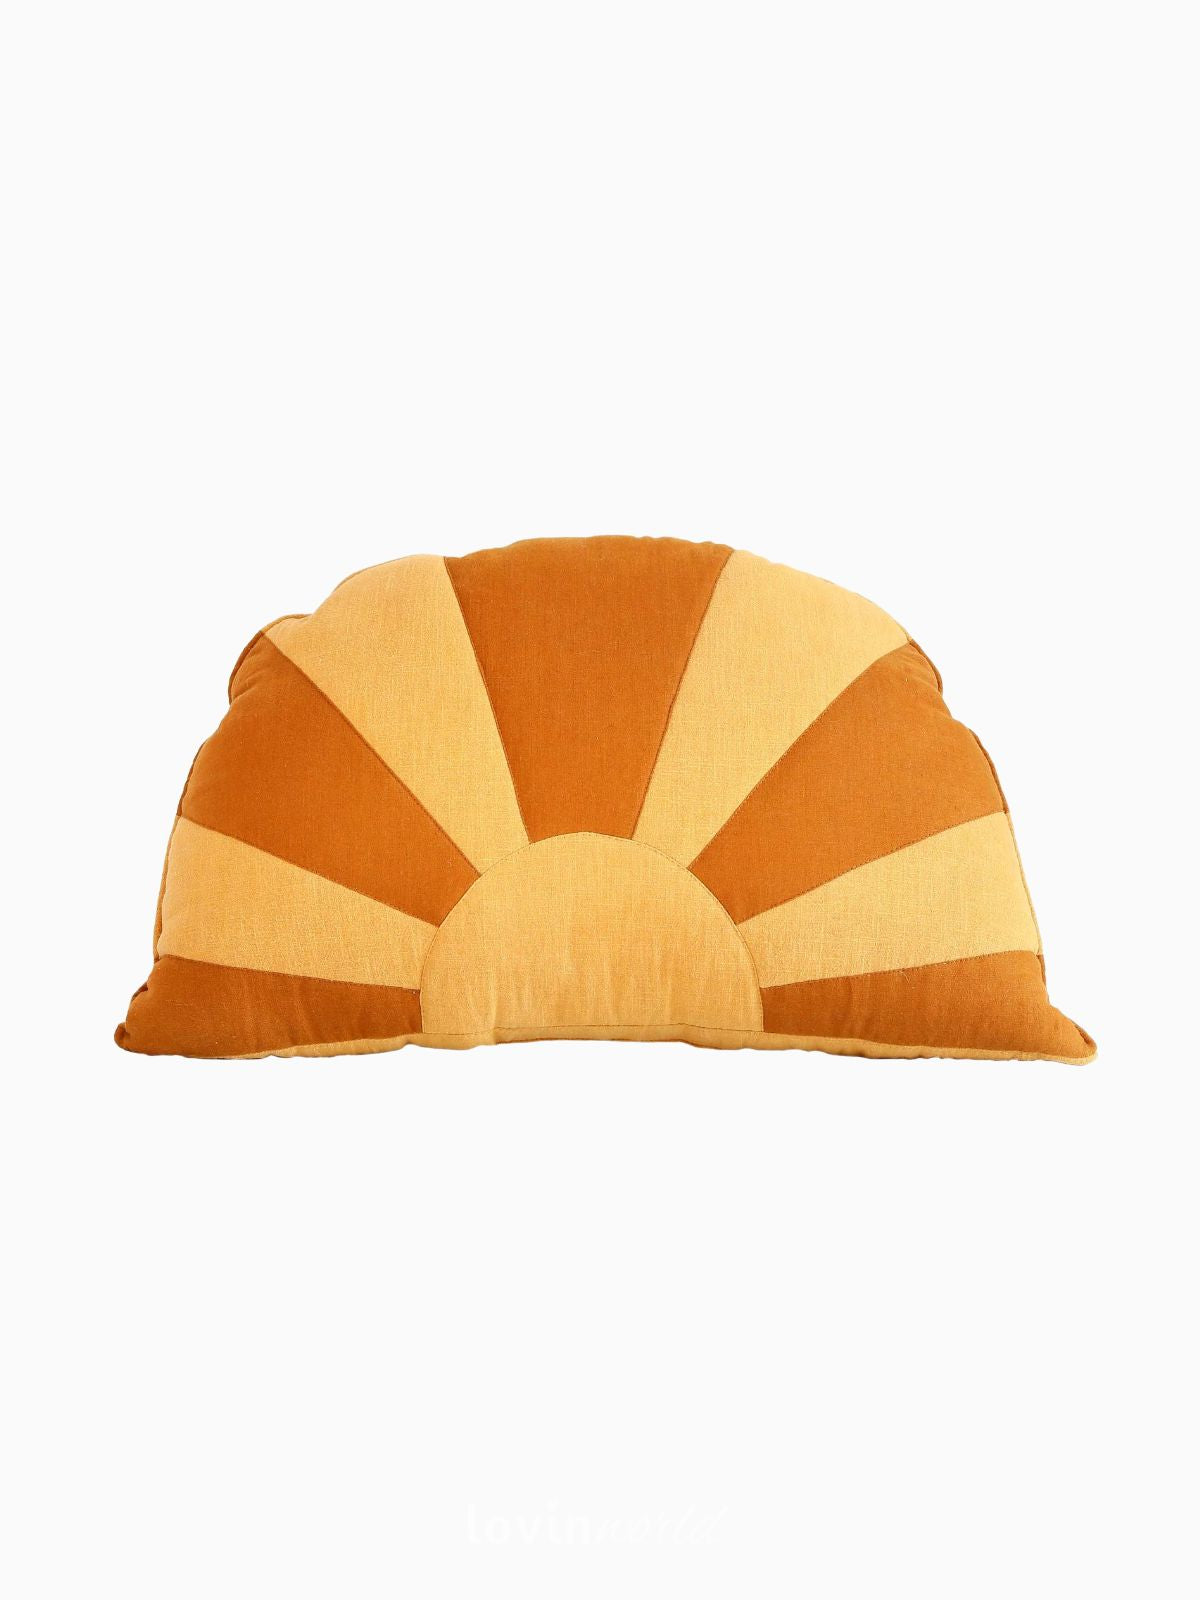 Cuscino Sole 100% lino e cotone in colore arancione e giallo 65x42 cm.-1